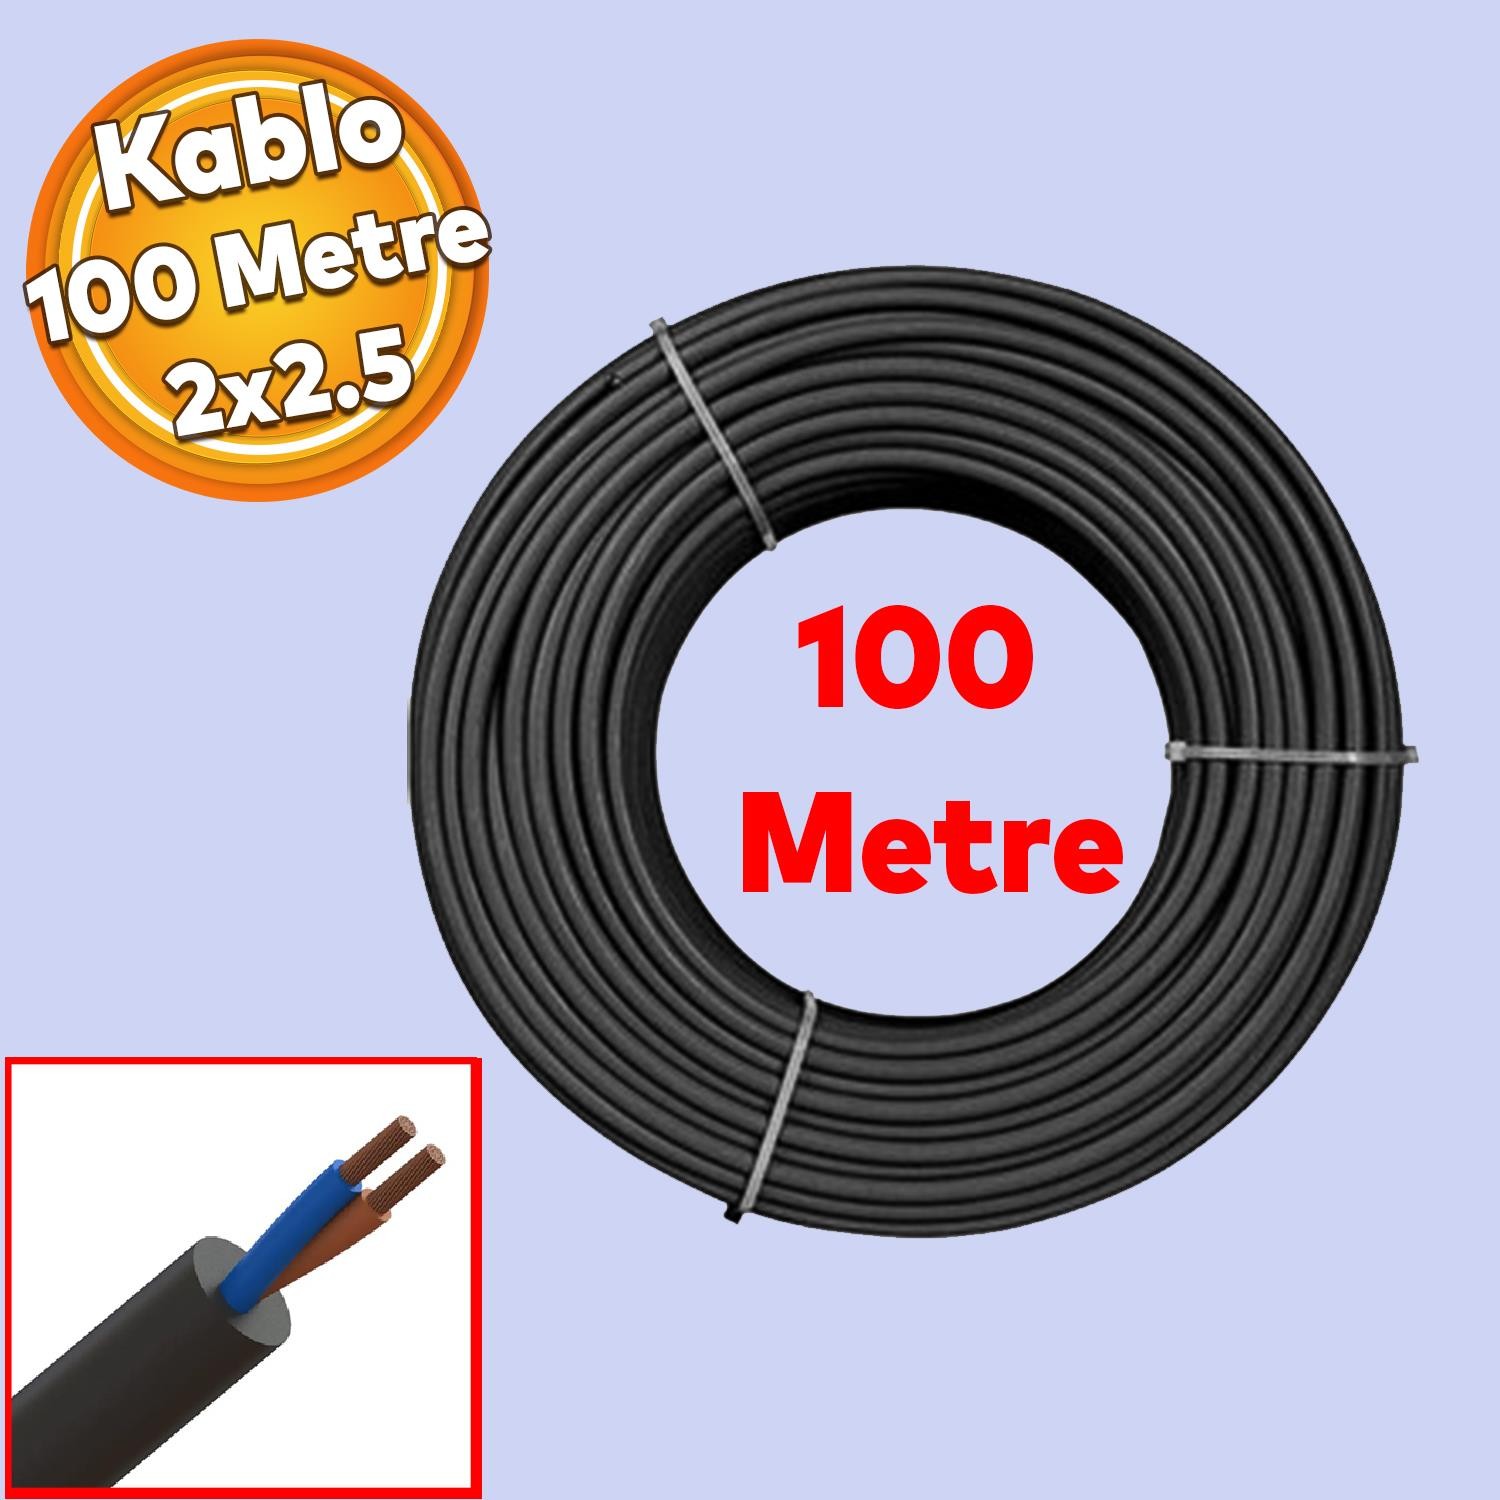 TTR CCA Çok Telli Elektrik Kablosu Topraklı Bakır İletken Damarlı Siyah Kablo 2x2.5 100 Metre